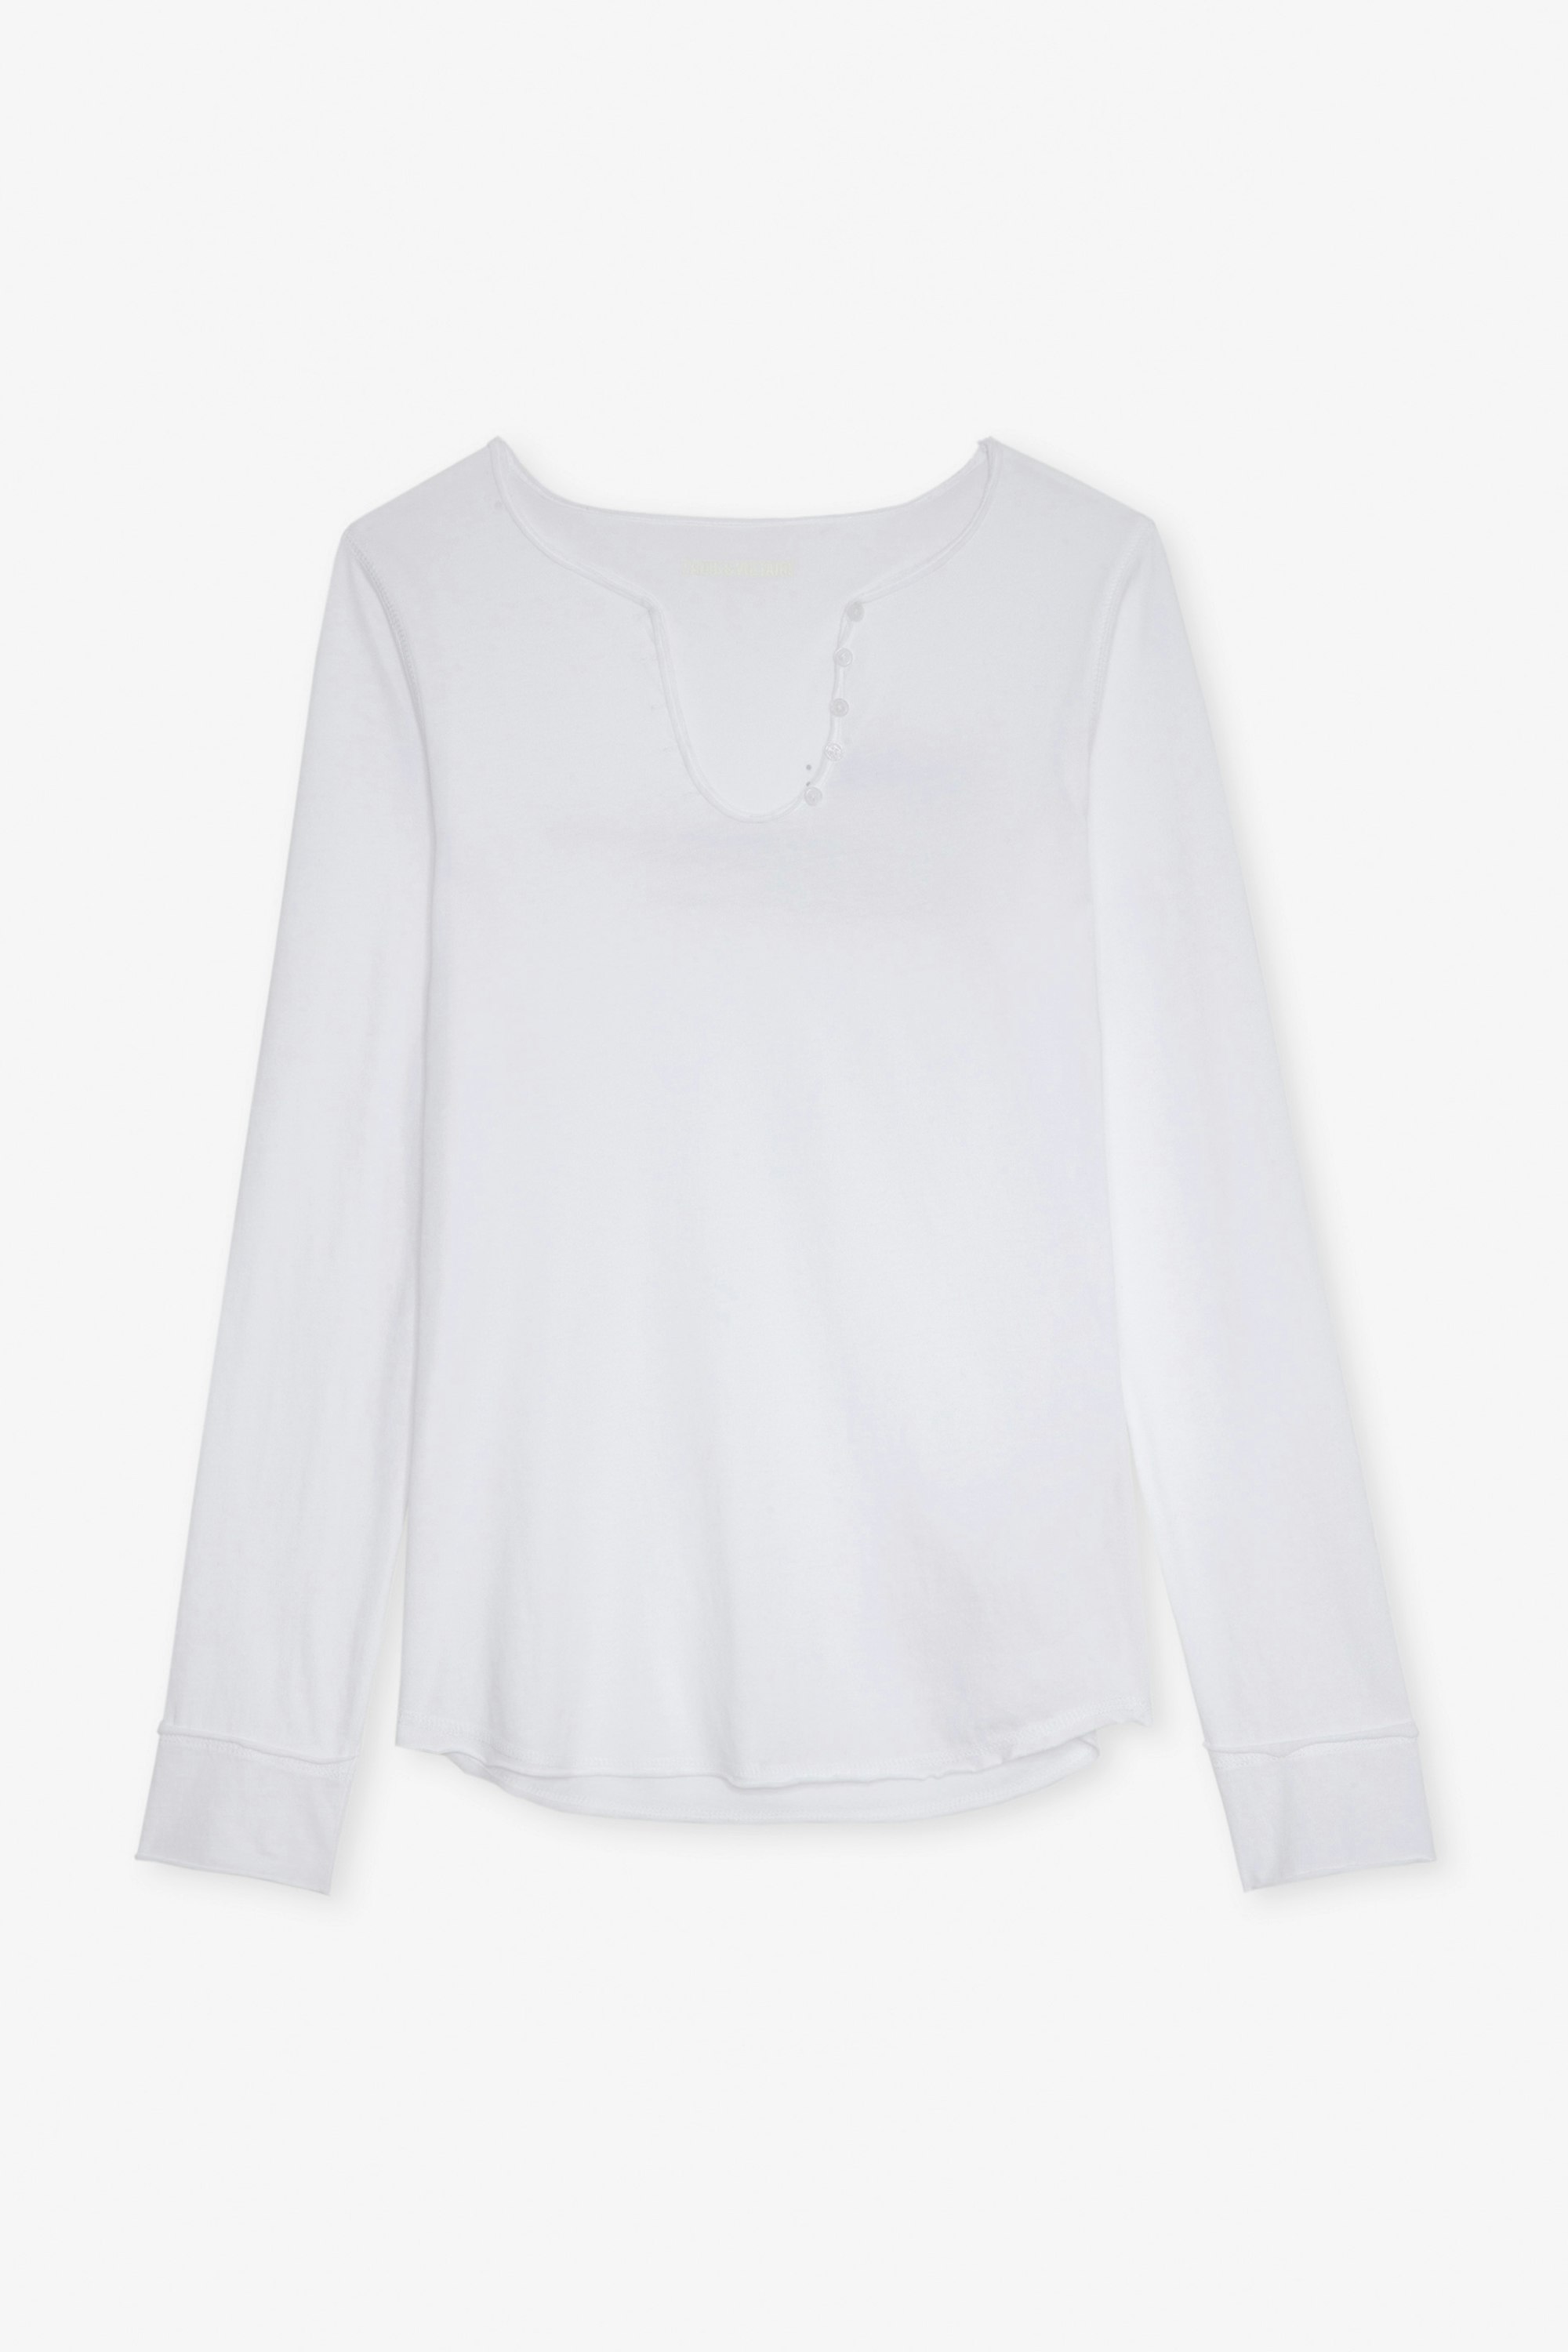 Karlek Henley T-Shirt - Women’s long-sleeved white cotton Henley T-shirt with “Karlek” definition print on the back.